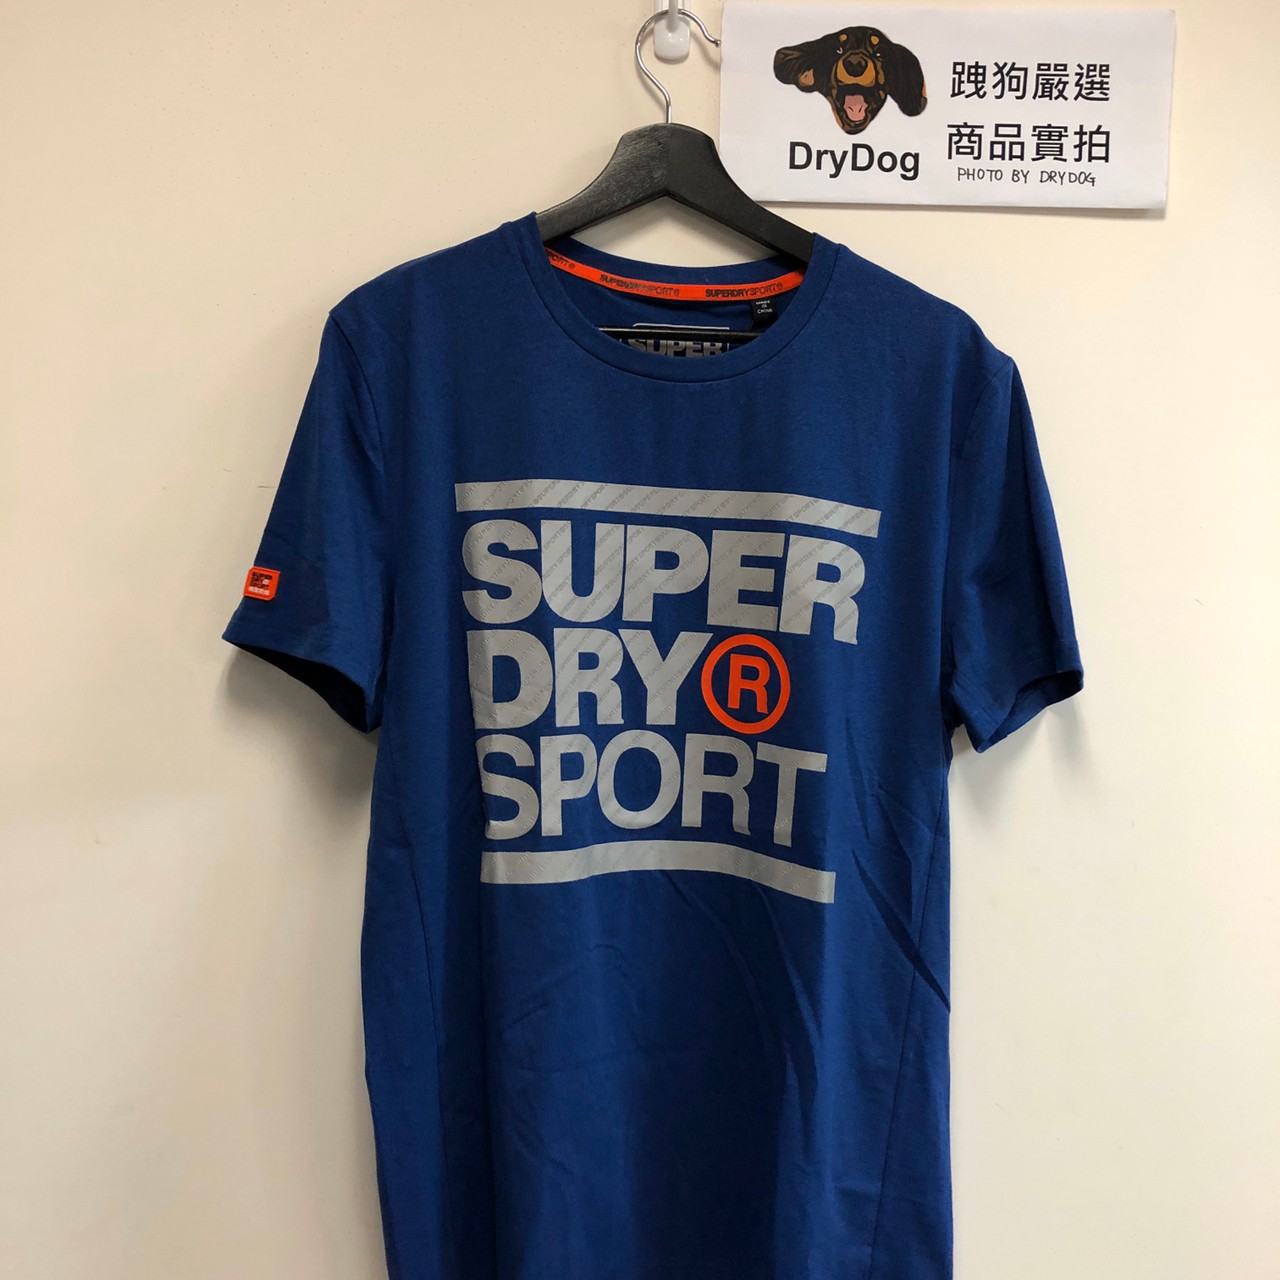 跩狗嚴選 極度乾燥 Superdry 運動系列 排溼透氣 英國藍 上衣 短袖 T恤 UA T-shirt